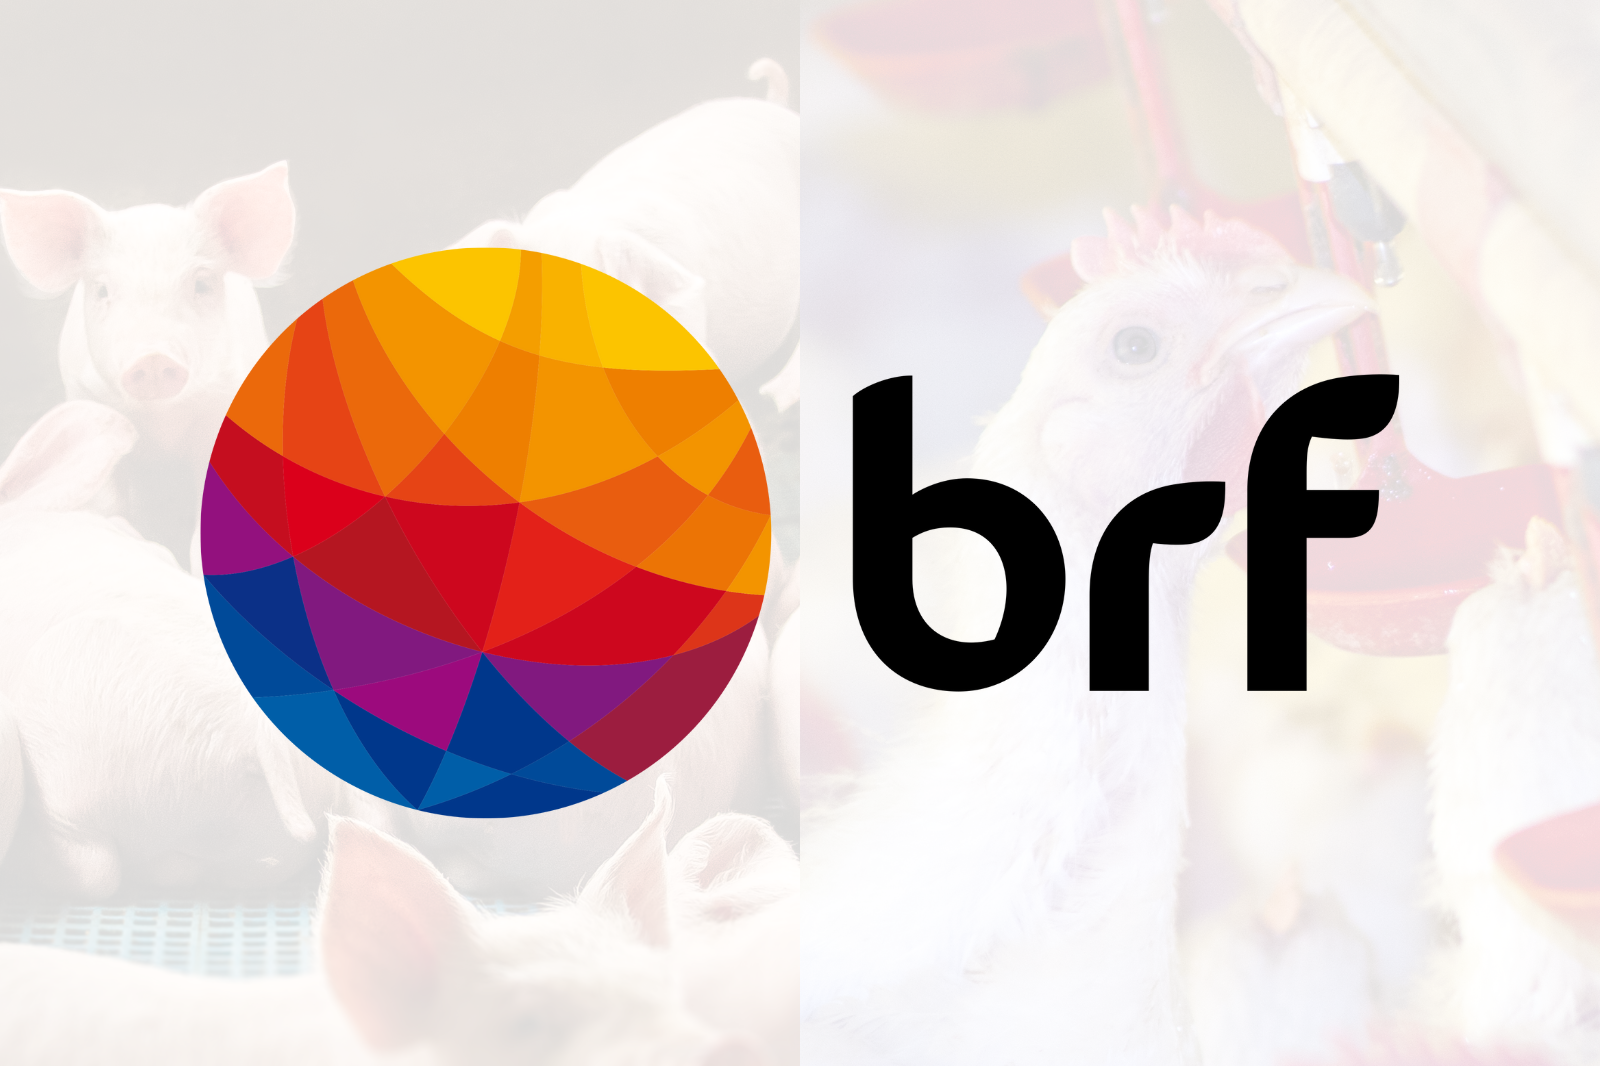 BRF certifica 100% de suas unidades de abate em bem-estar animal no Brasil